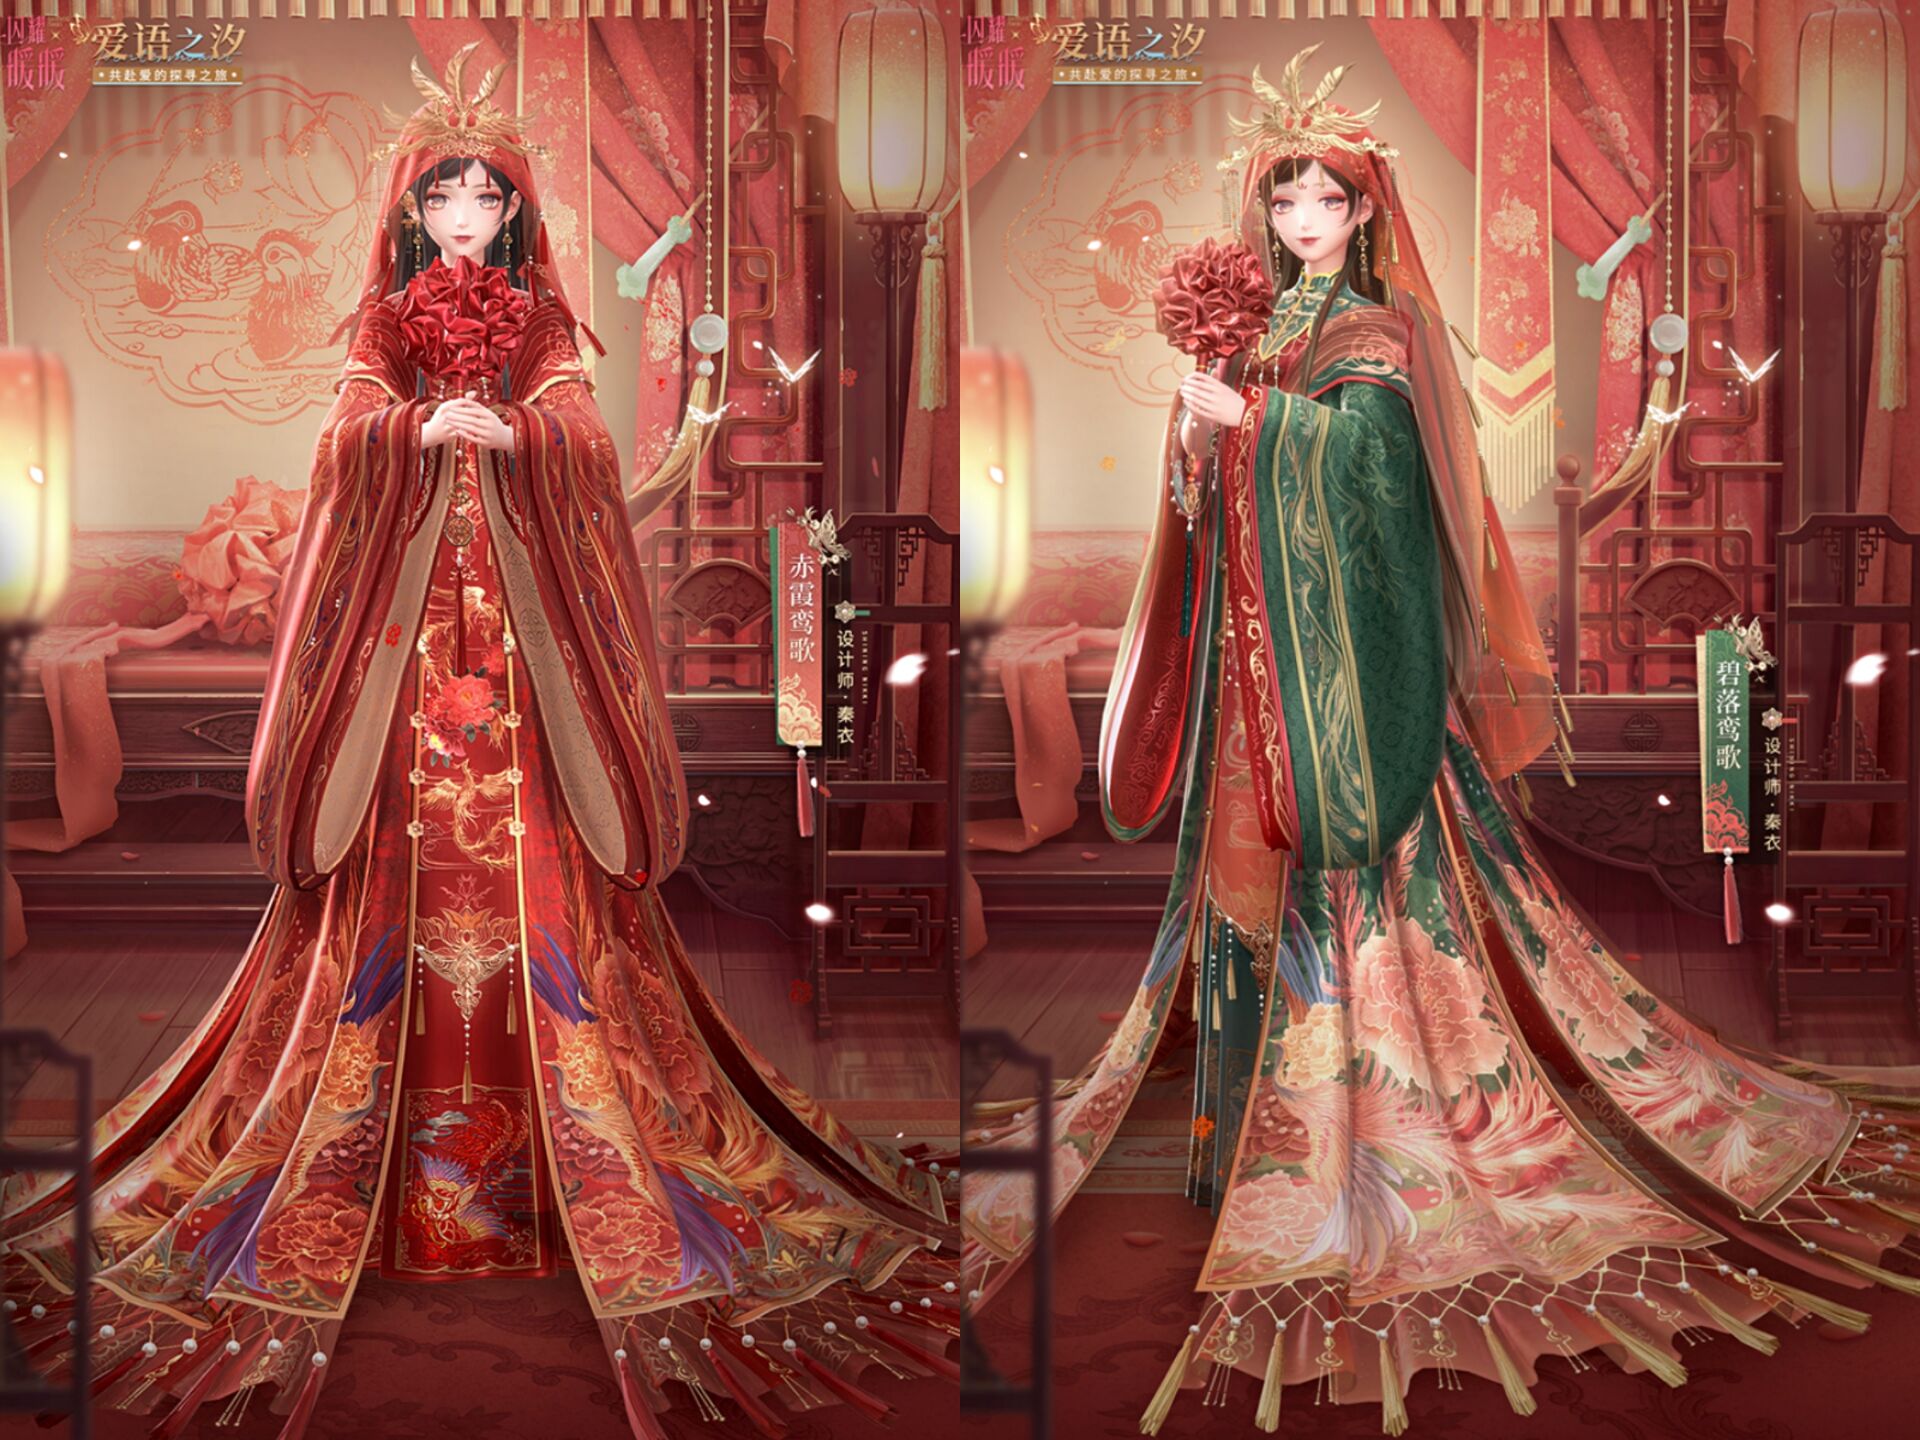 闪耀暖暖:婚纱嫁衣上线,中式vs西式,你想嫁秦衣还是墨